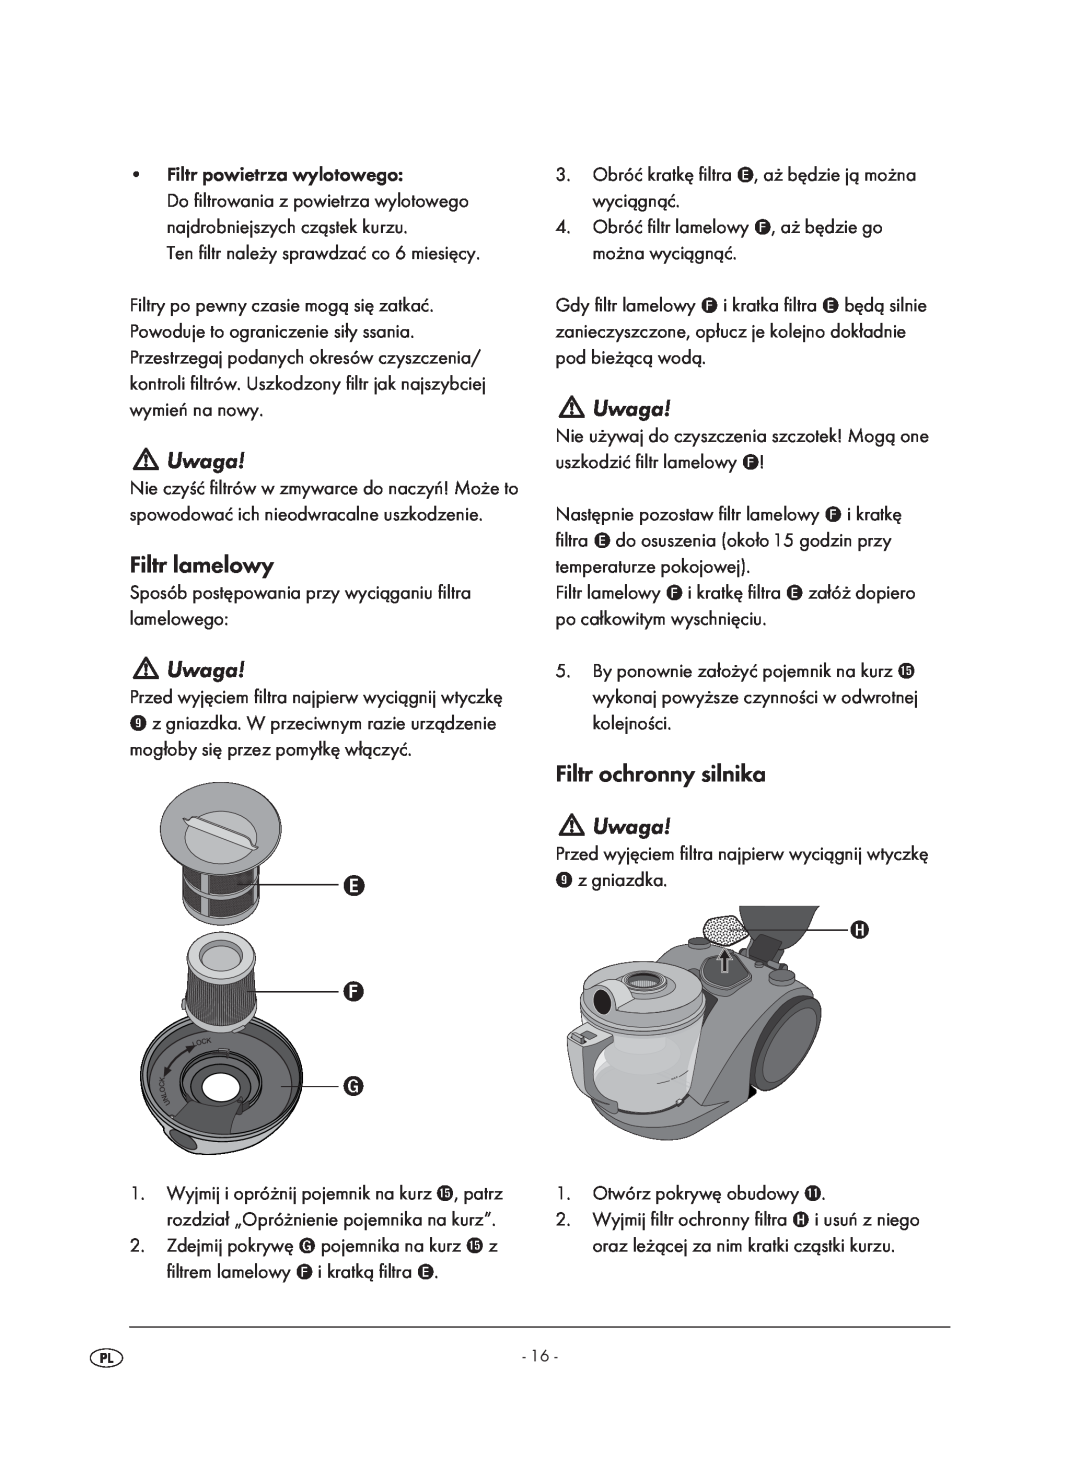 Kompernass KH 1410 operating instructions Uwaga, Filtr lamelowy, Filtr ochronny silnika 